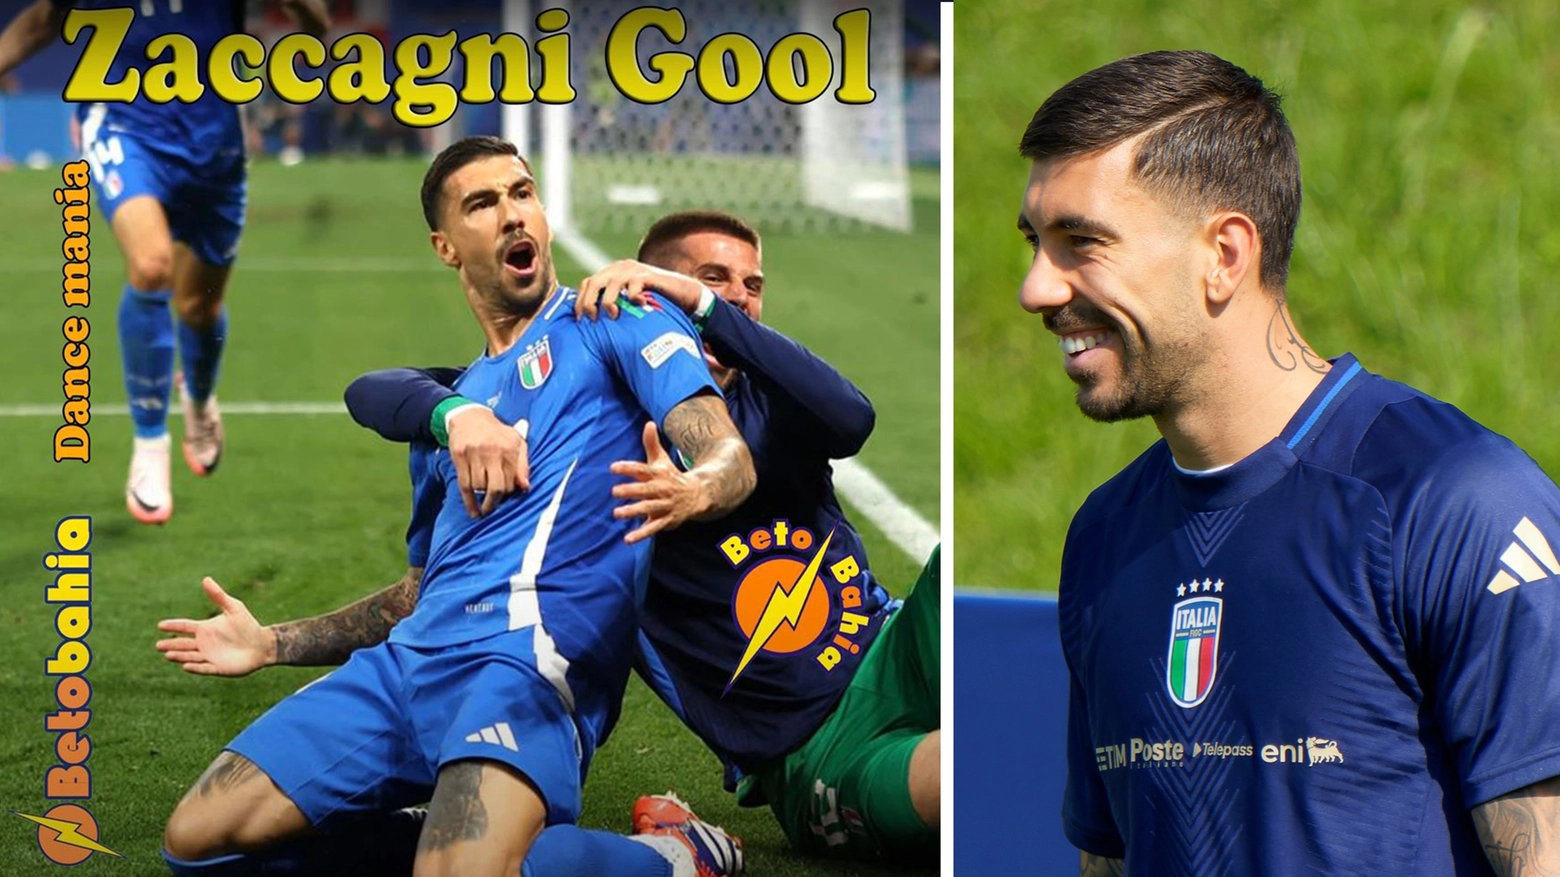 Arriva la canzone-tormentone 'Zaccagni-gol', dedicata al calciatore bellariese Mattia Zaccagni protagonista con l'Italia agli Europei